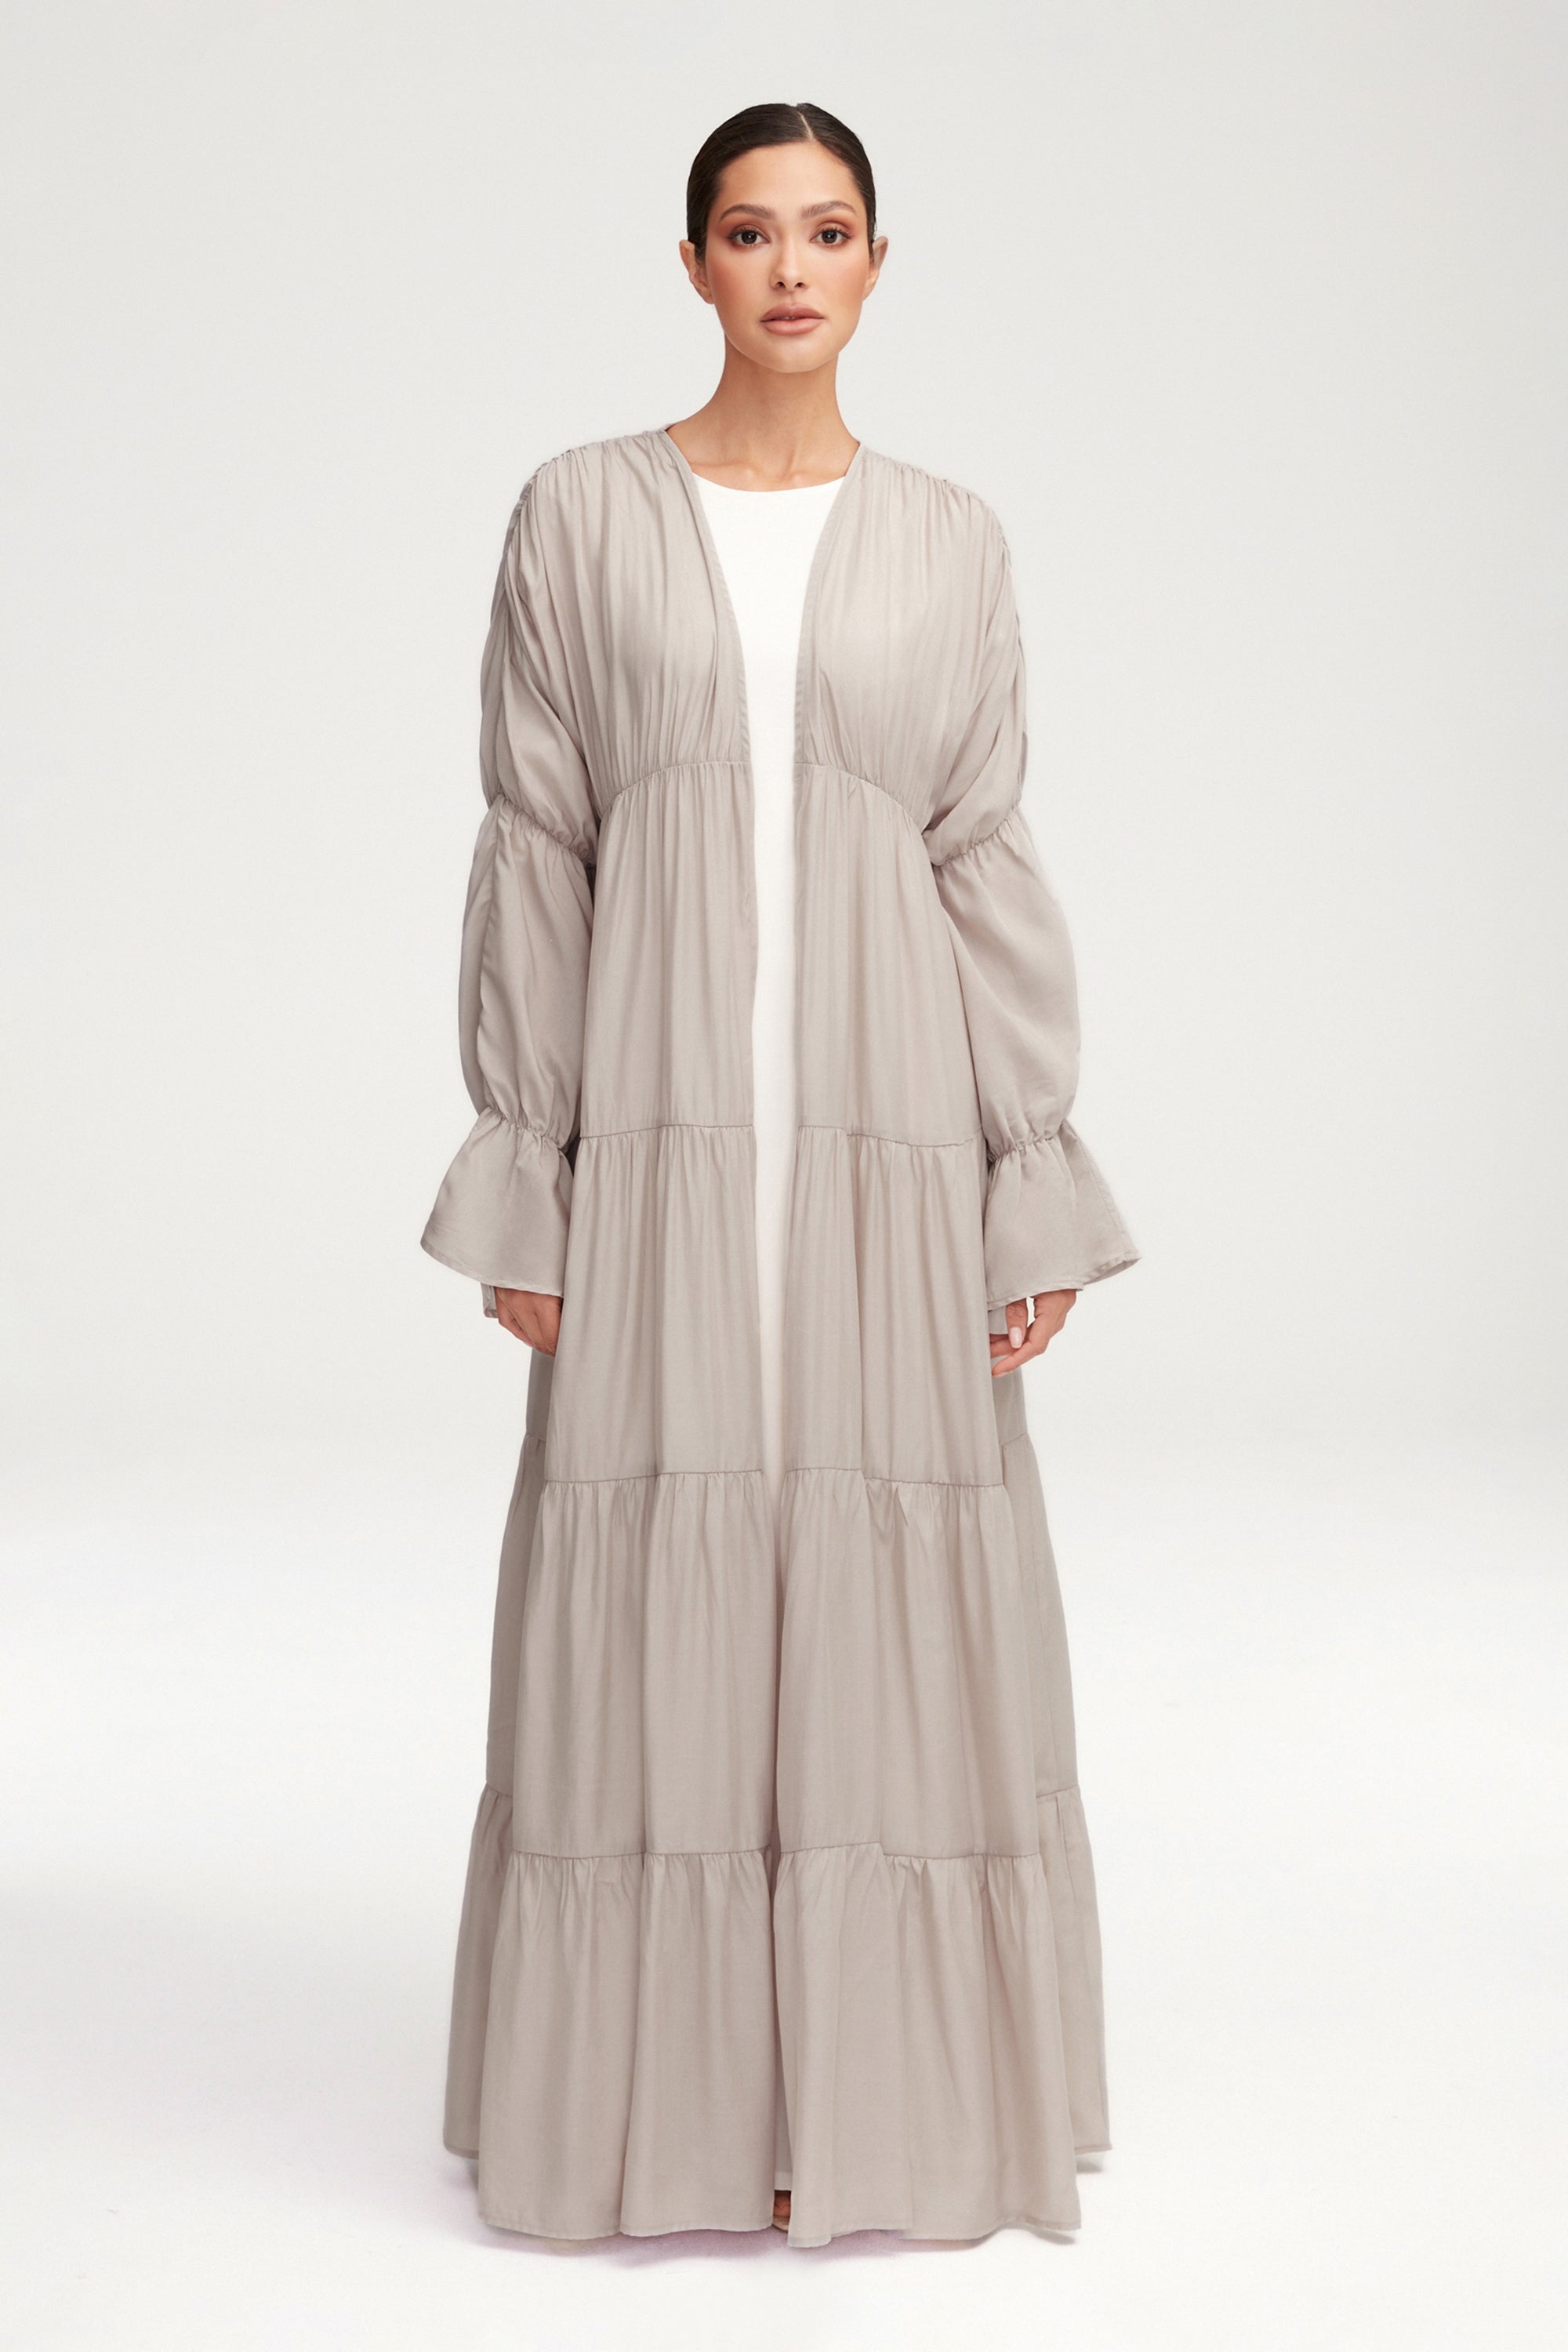 Malika Open Abaya - Cloud Clothing Veiled 